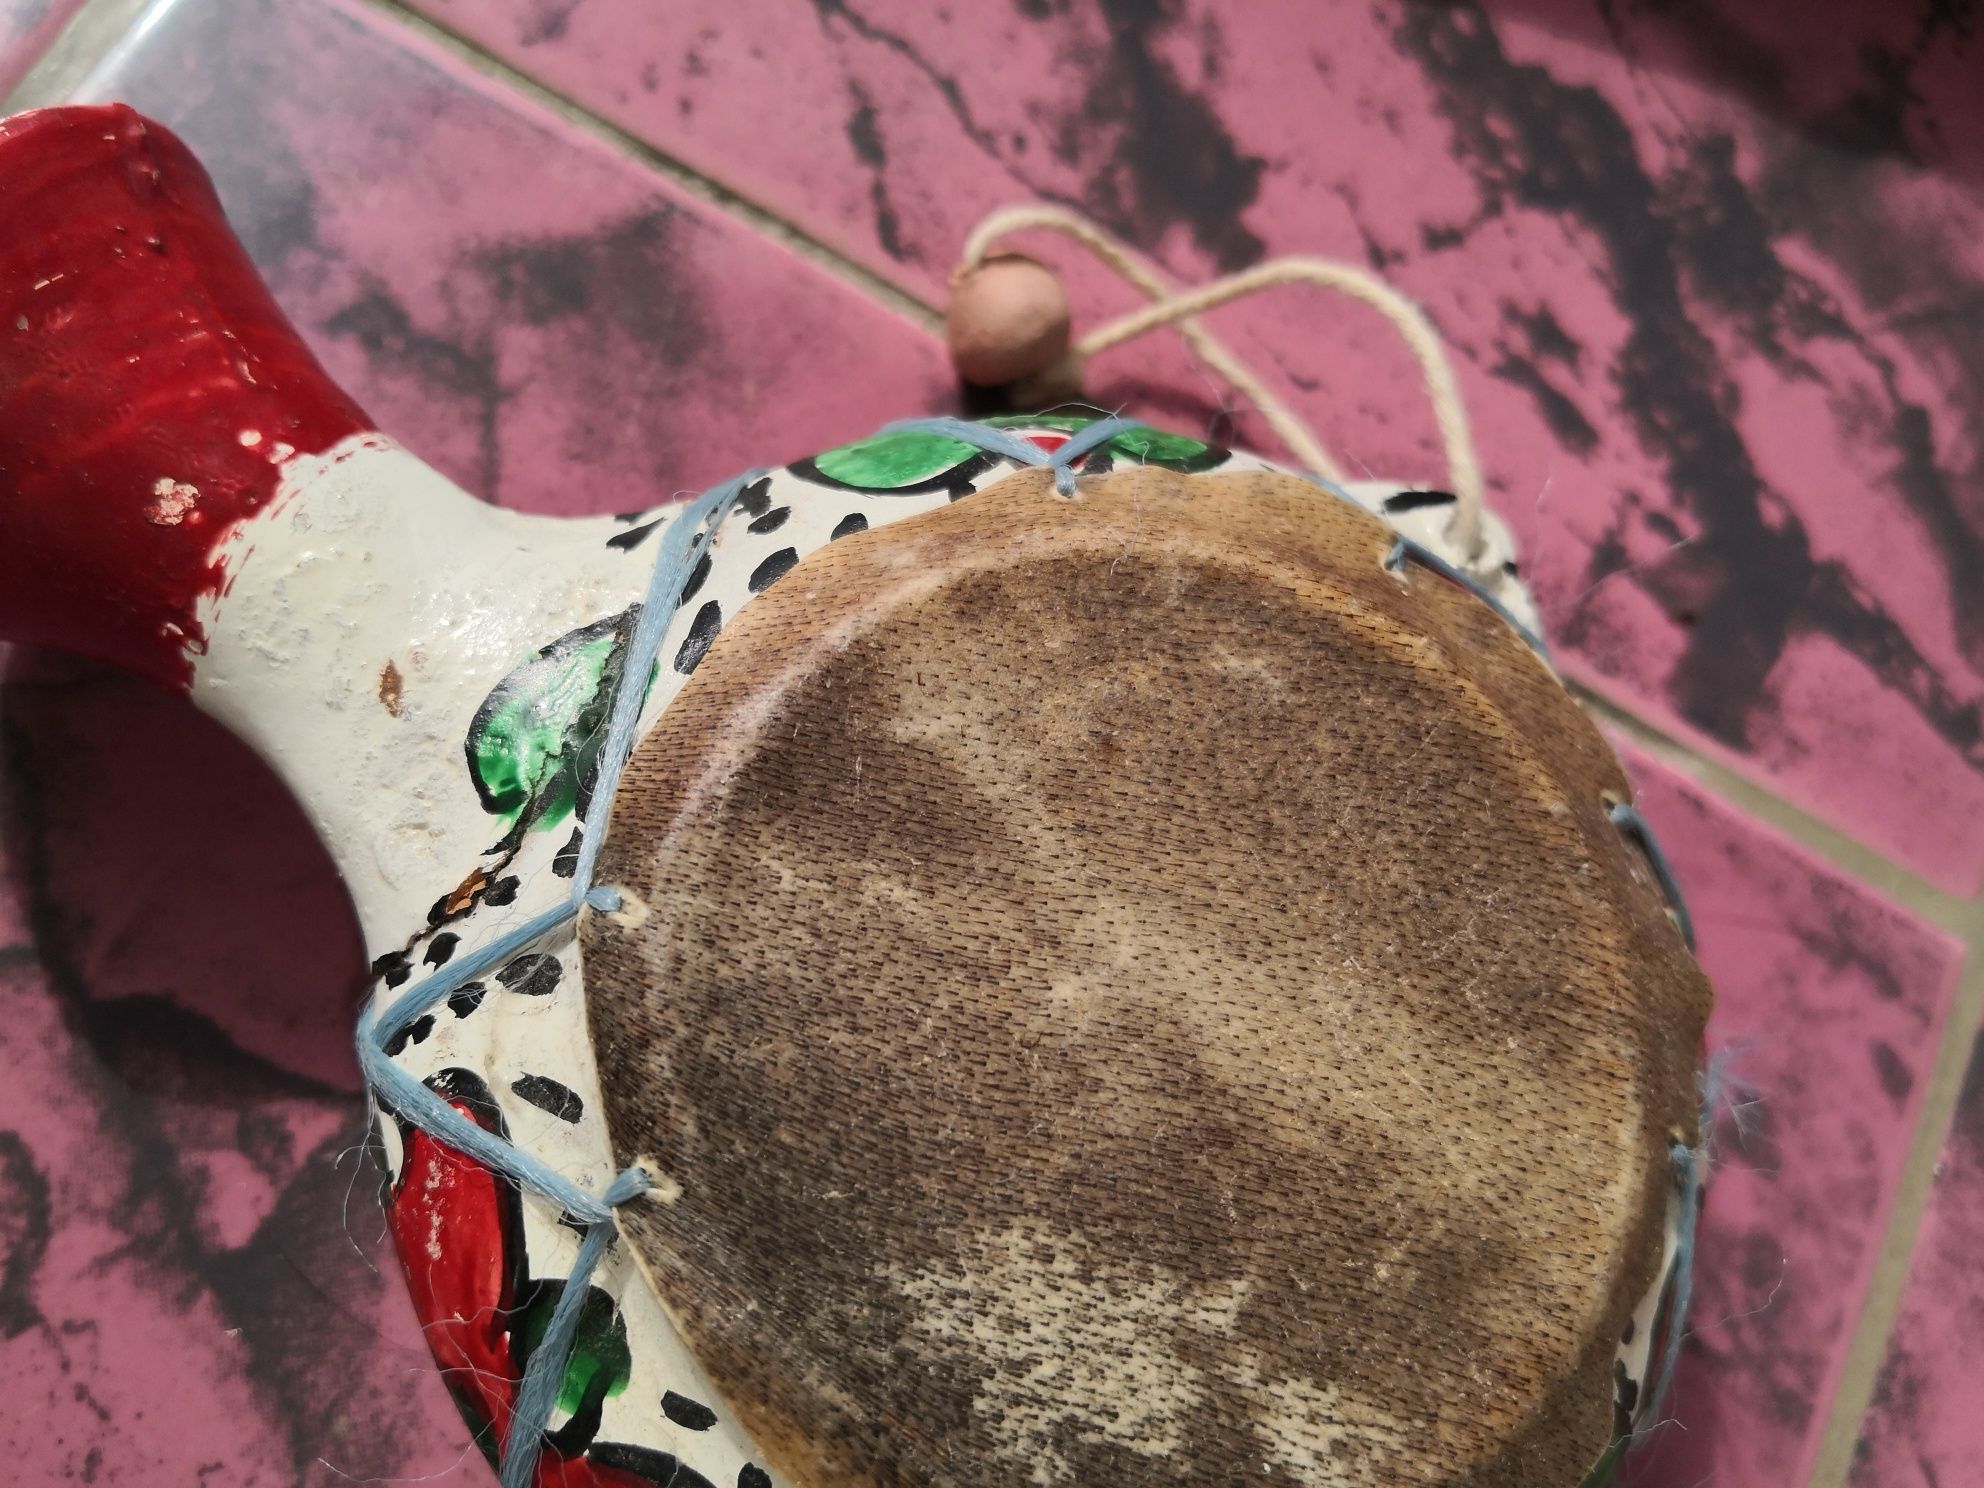 Instrumente muzicale tradiționale America Centrala și de Sud